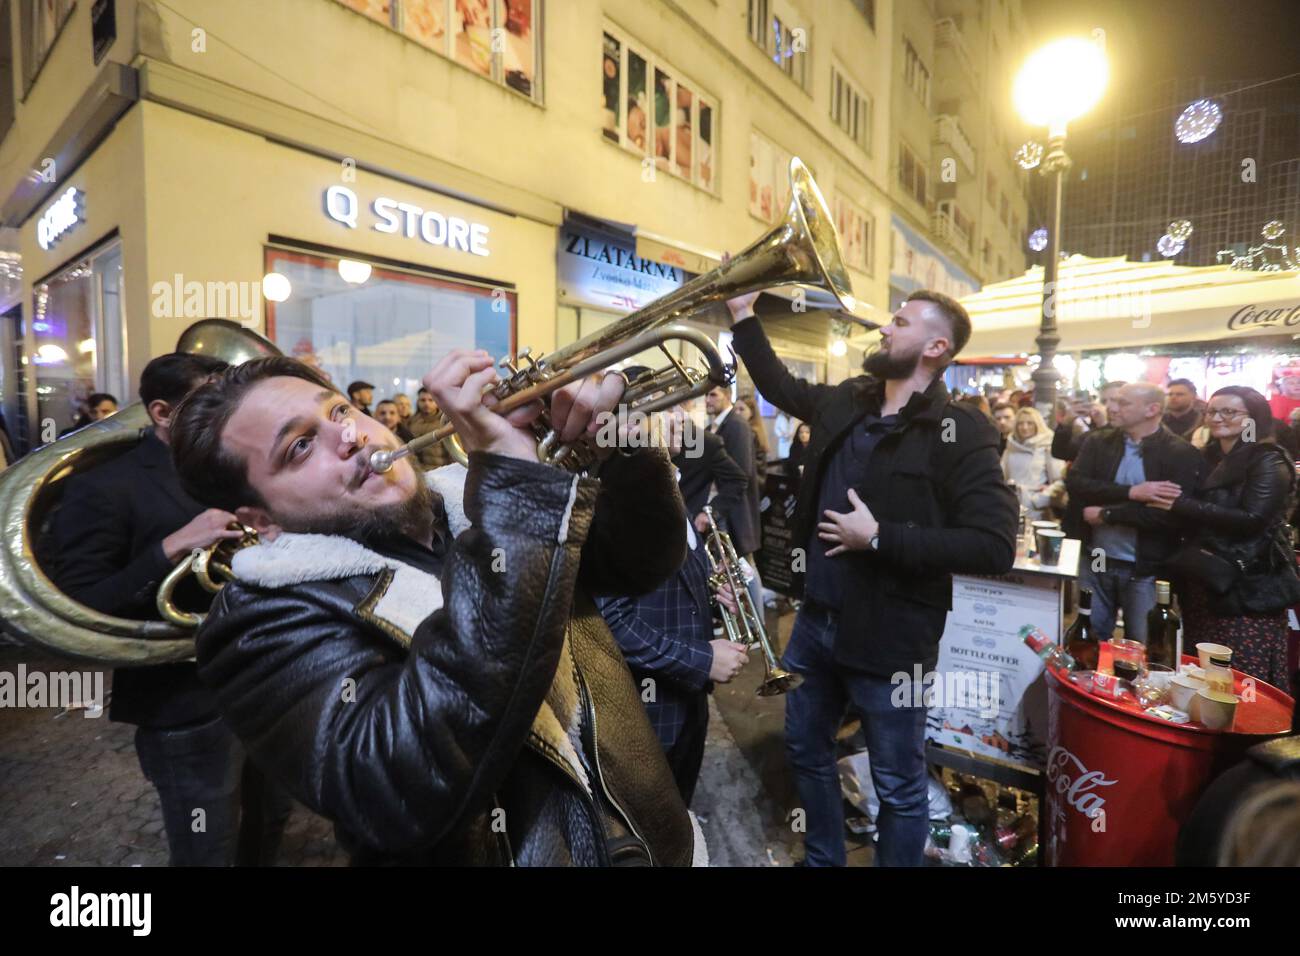 Le persone si riuniscono durante le celebrazioni di Capodanno in Piazza Ban Josip Jelacic a Zagabria, Croazia, il 31 dicembre 2022. Foto: Tomislav Miletic/PIXSELL Foto Stock